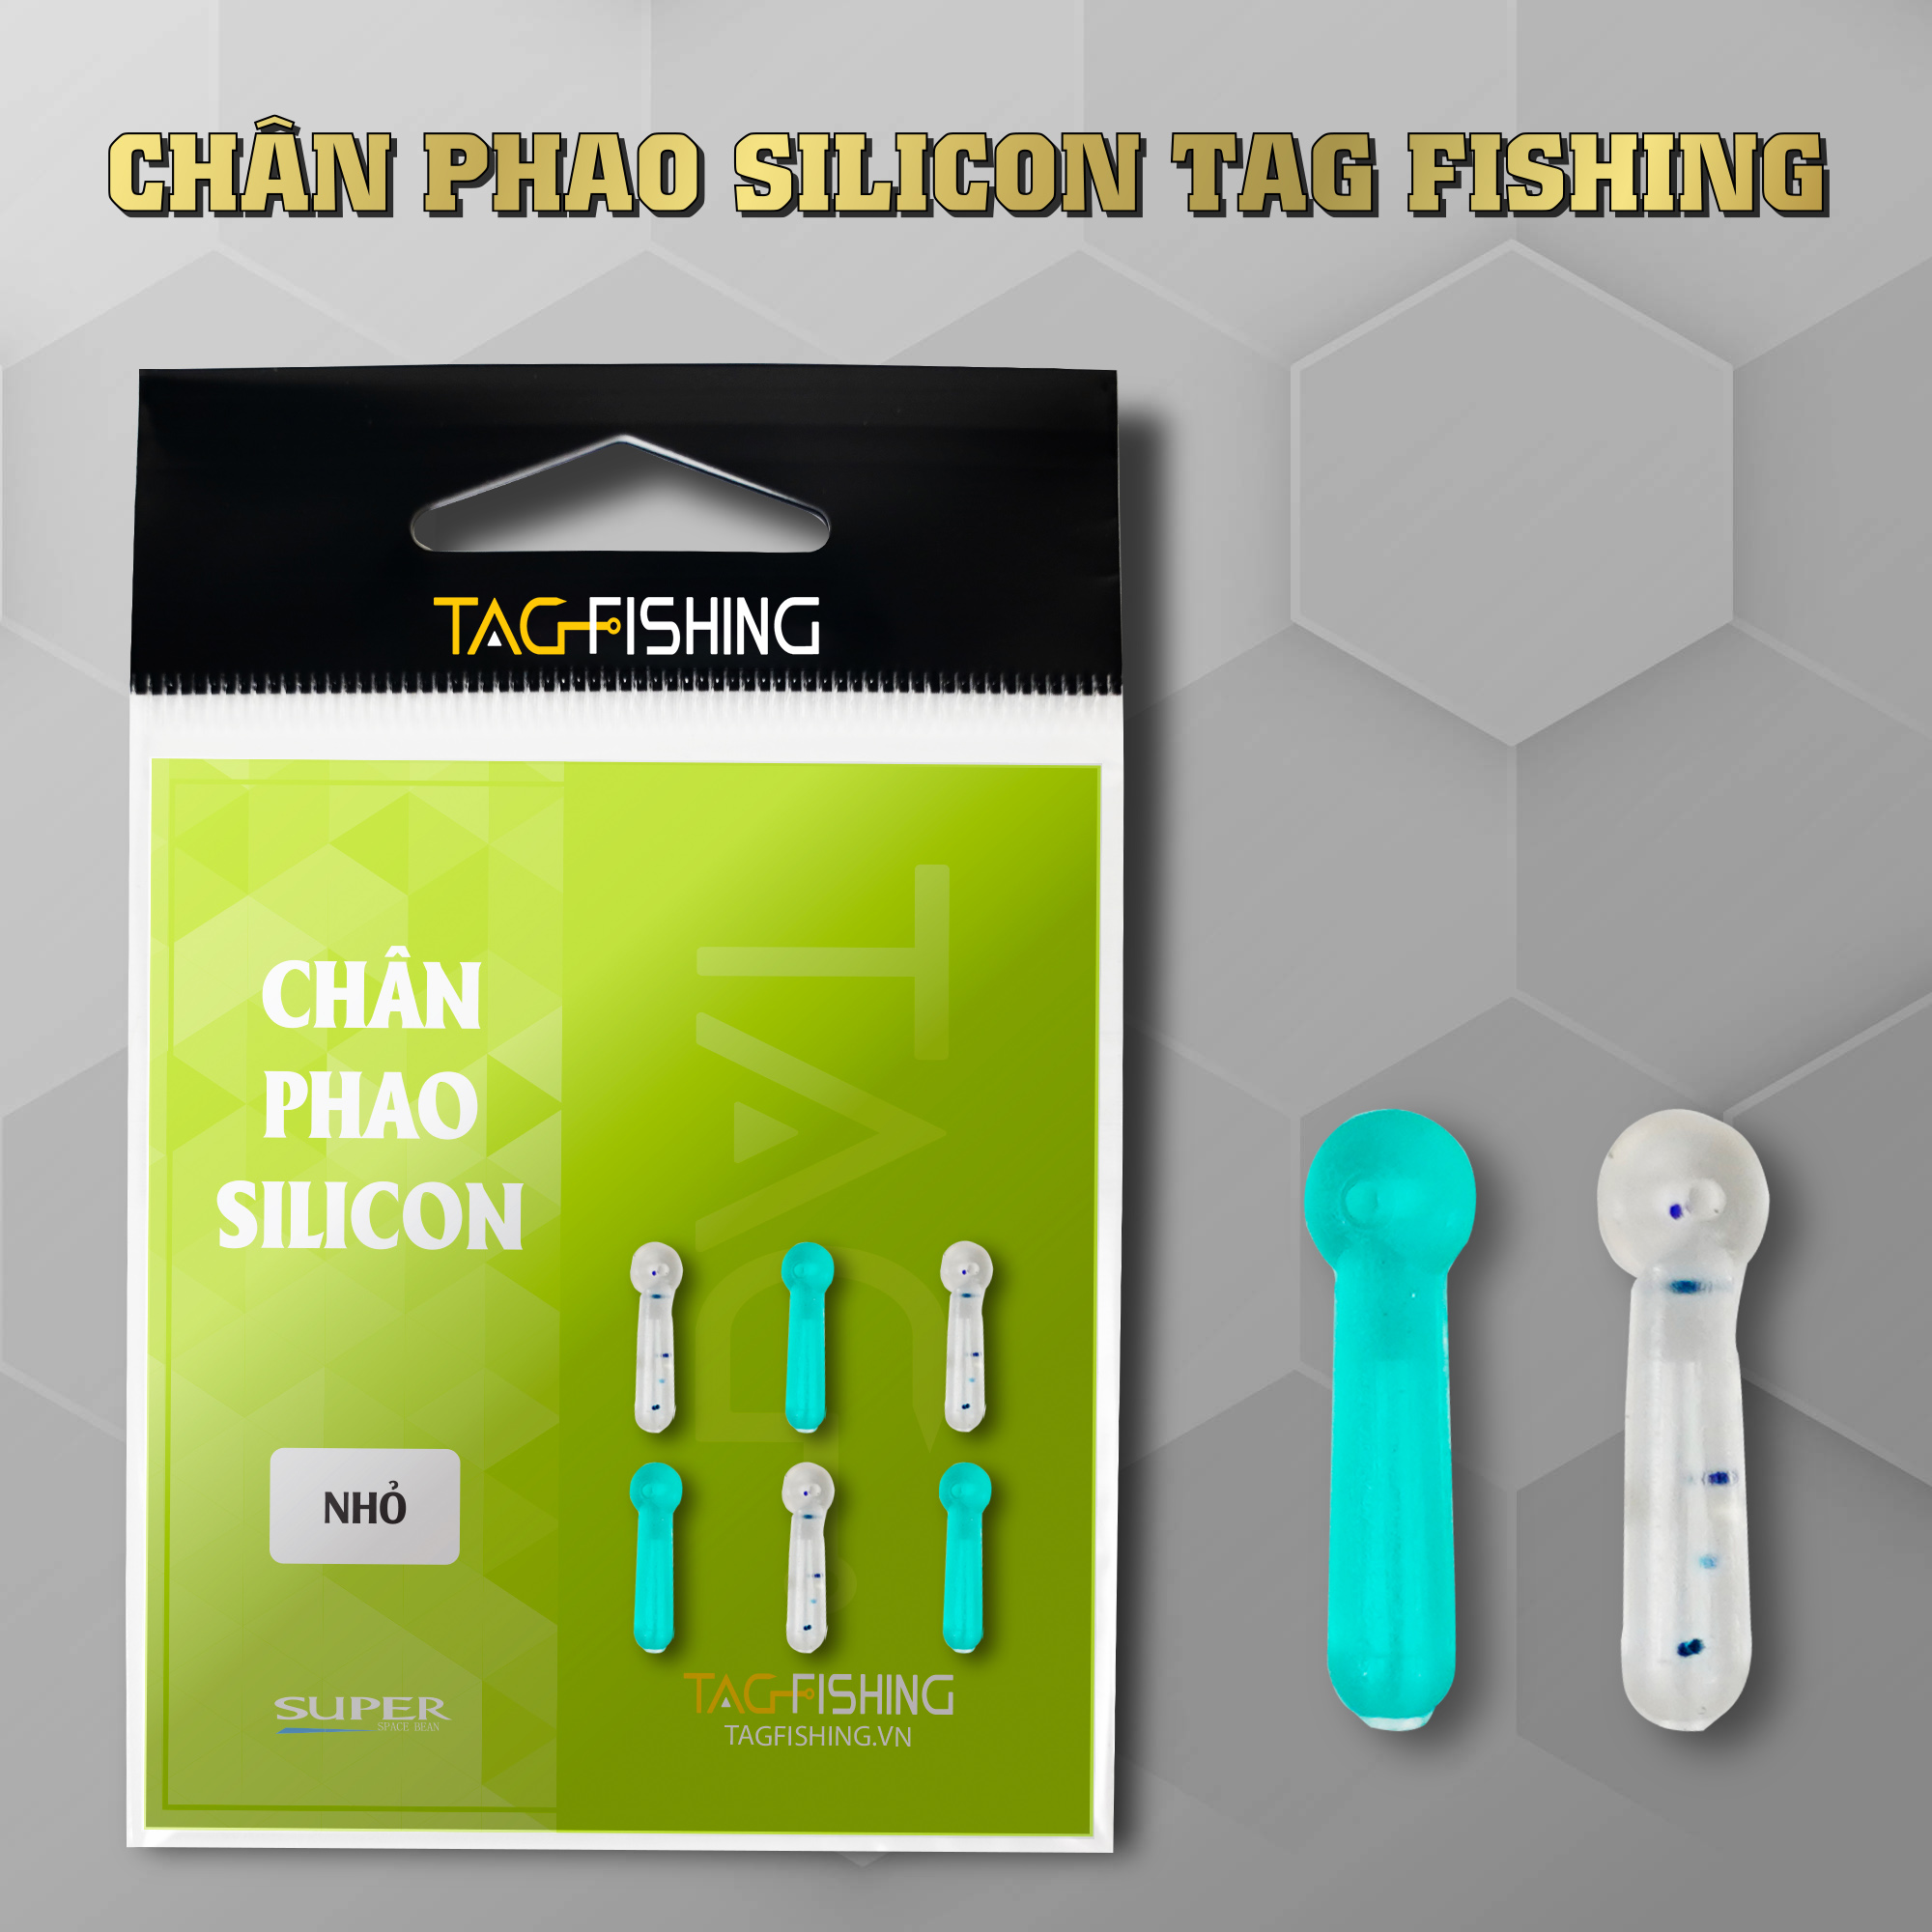 Chân Phao Silicon Tag Fishing